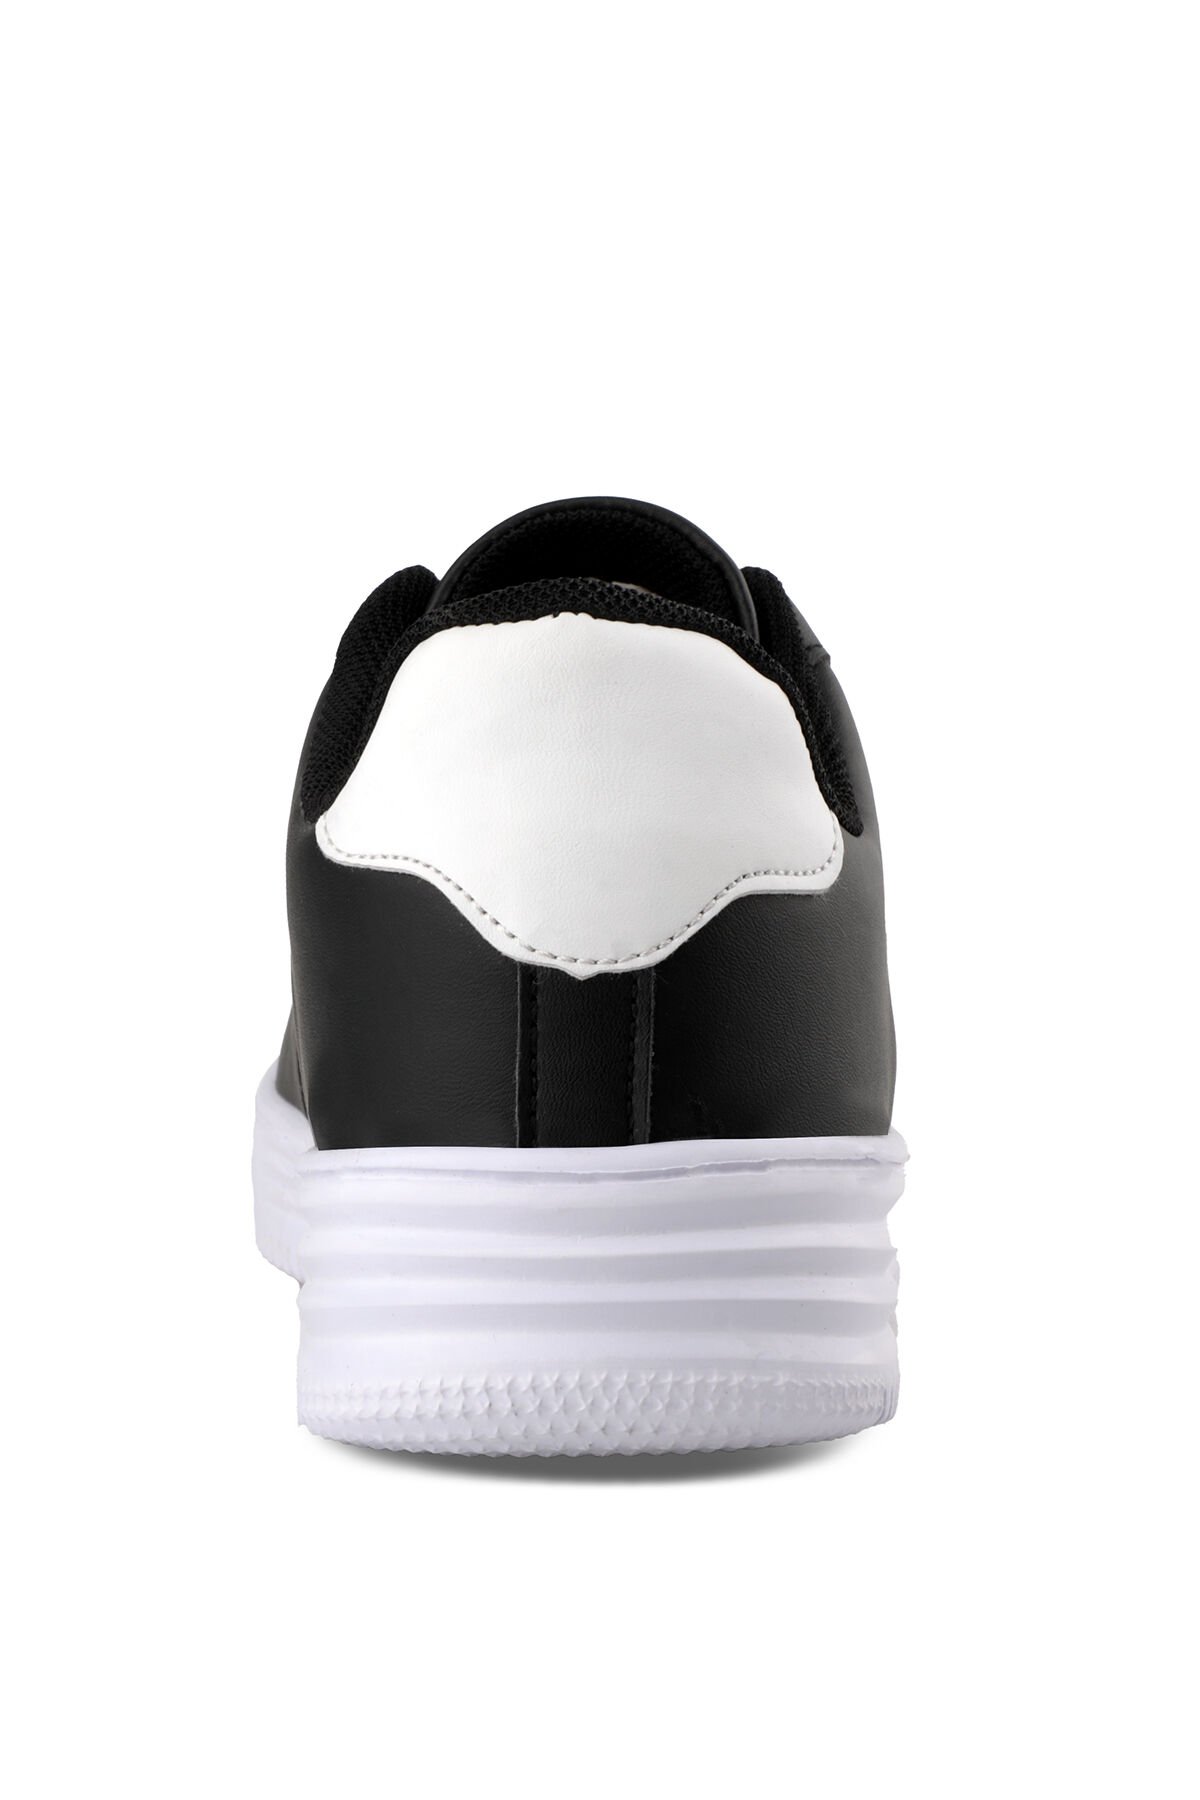 Slazenger CARBON Sneaker Erkek Ayakkabı Siyah / Beyaz - Thumbnail